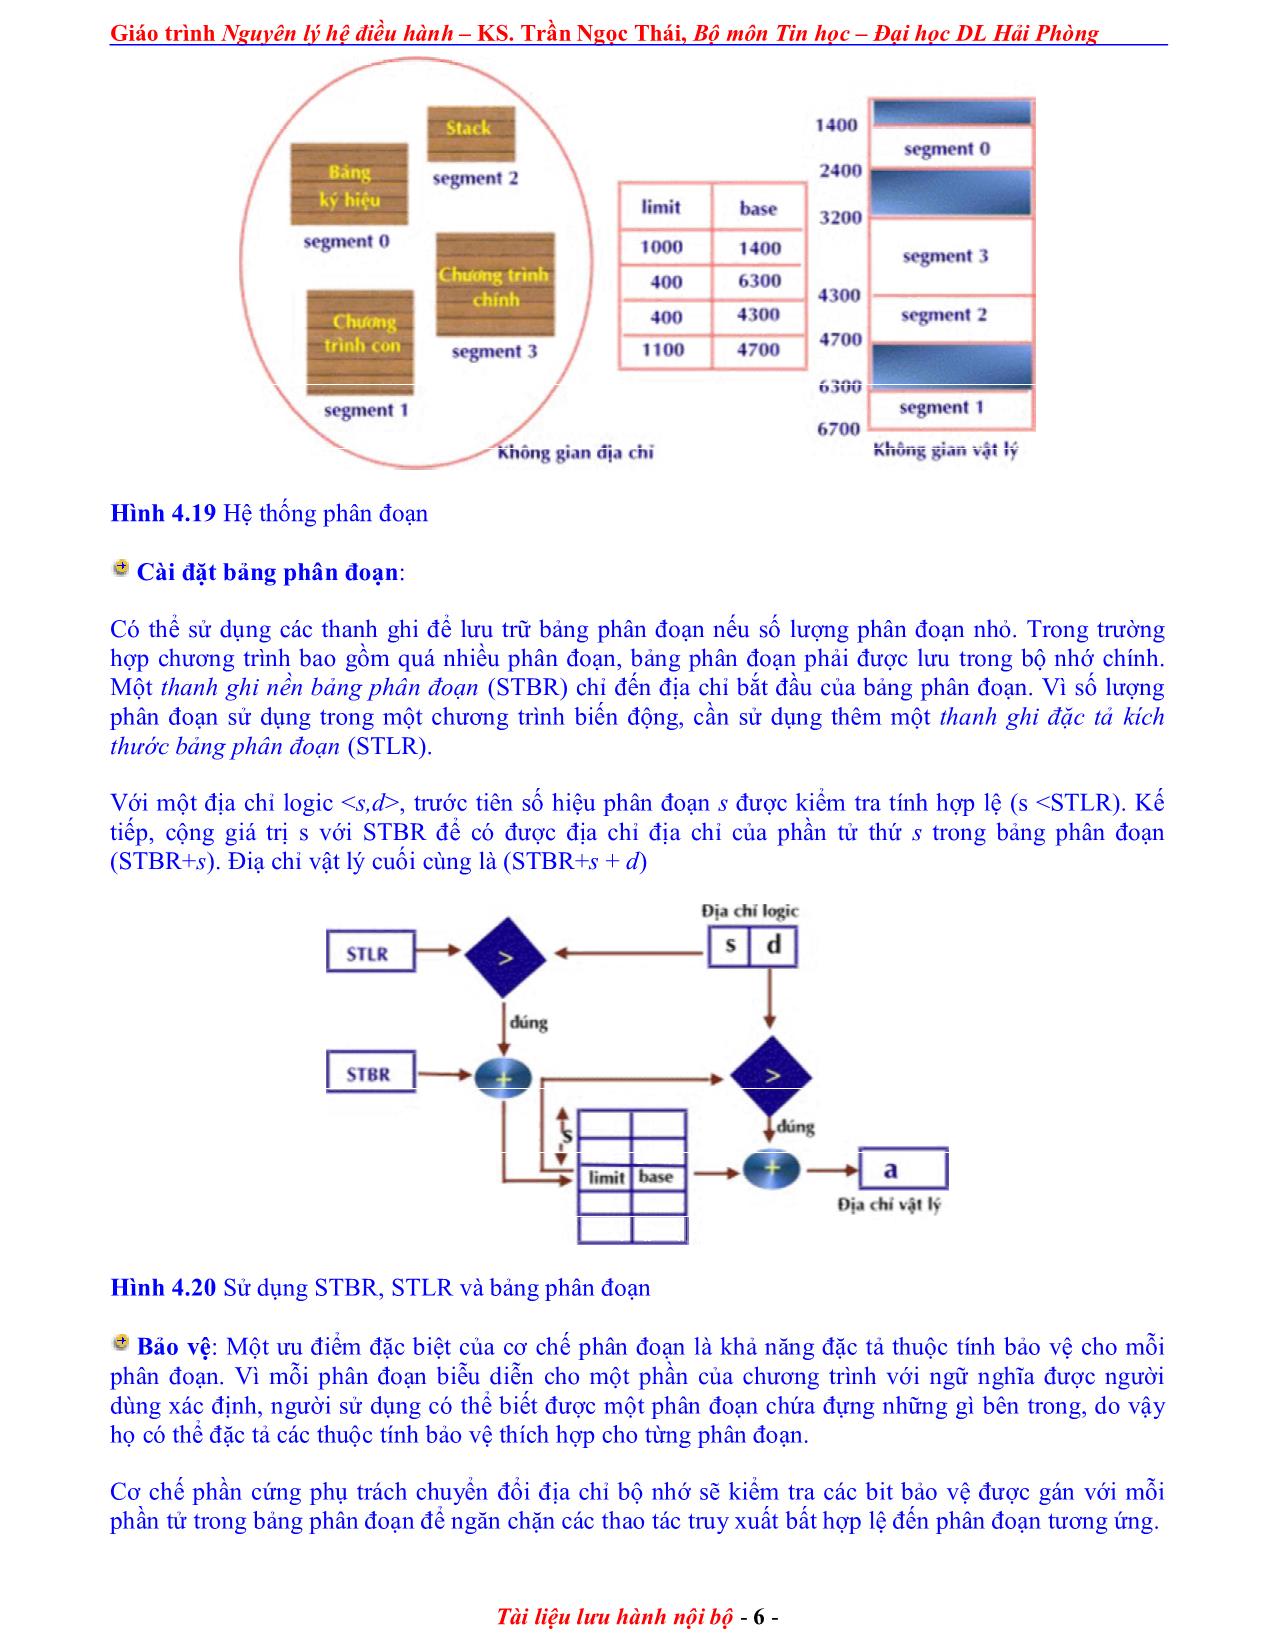 Giáo trình Nguyên lý điều hành (Phần 2) trang 6